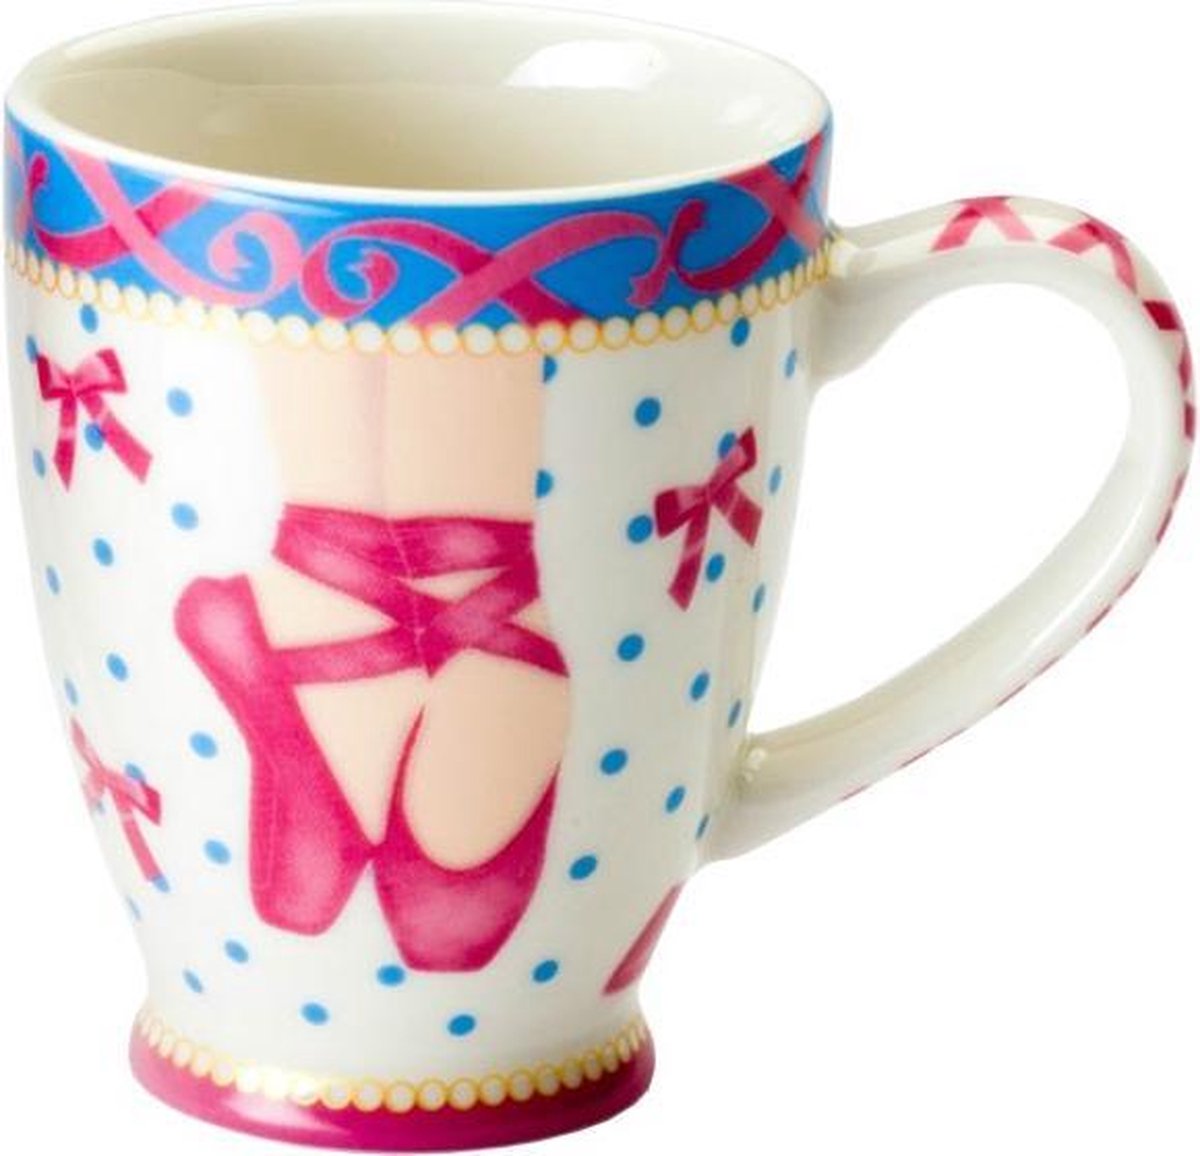 Cupkes - Senseokopjes - Senseokopje - koffiekopje - set van 4 stuks - hoogte 8 cm - pink - blauw - ballet - ballerina